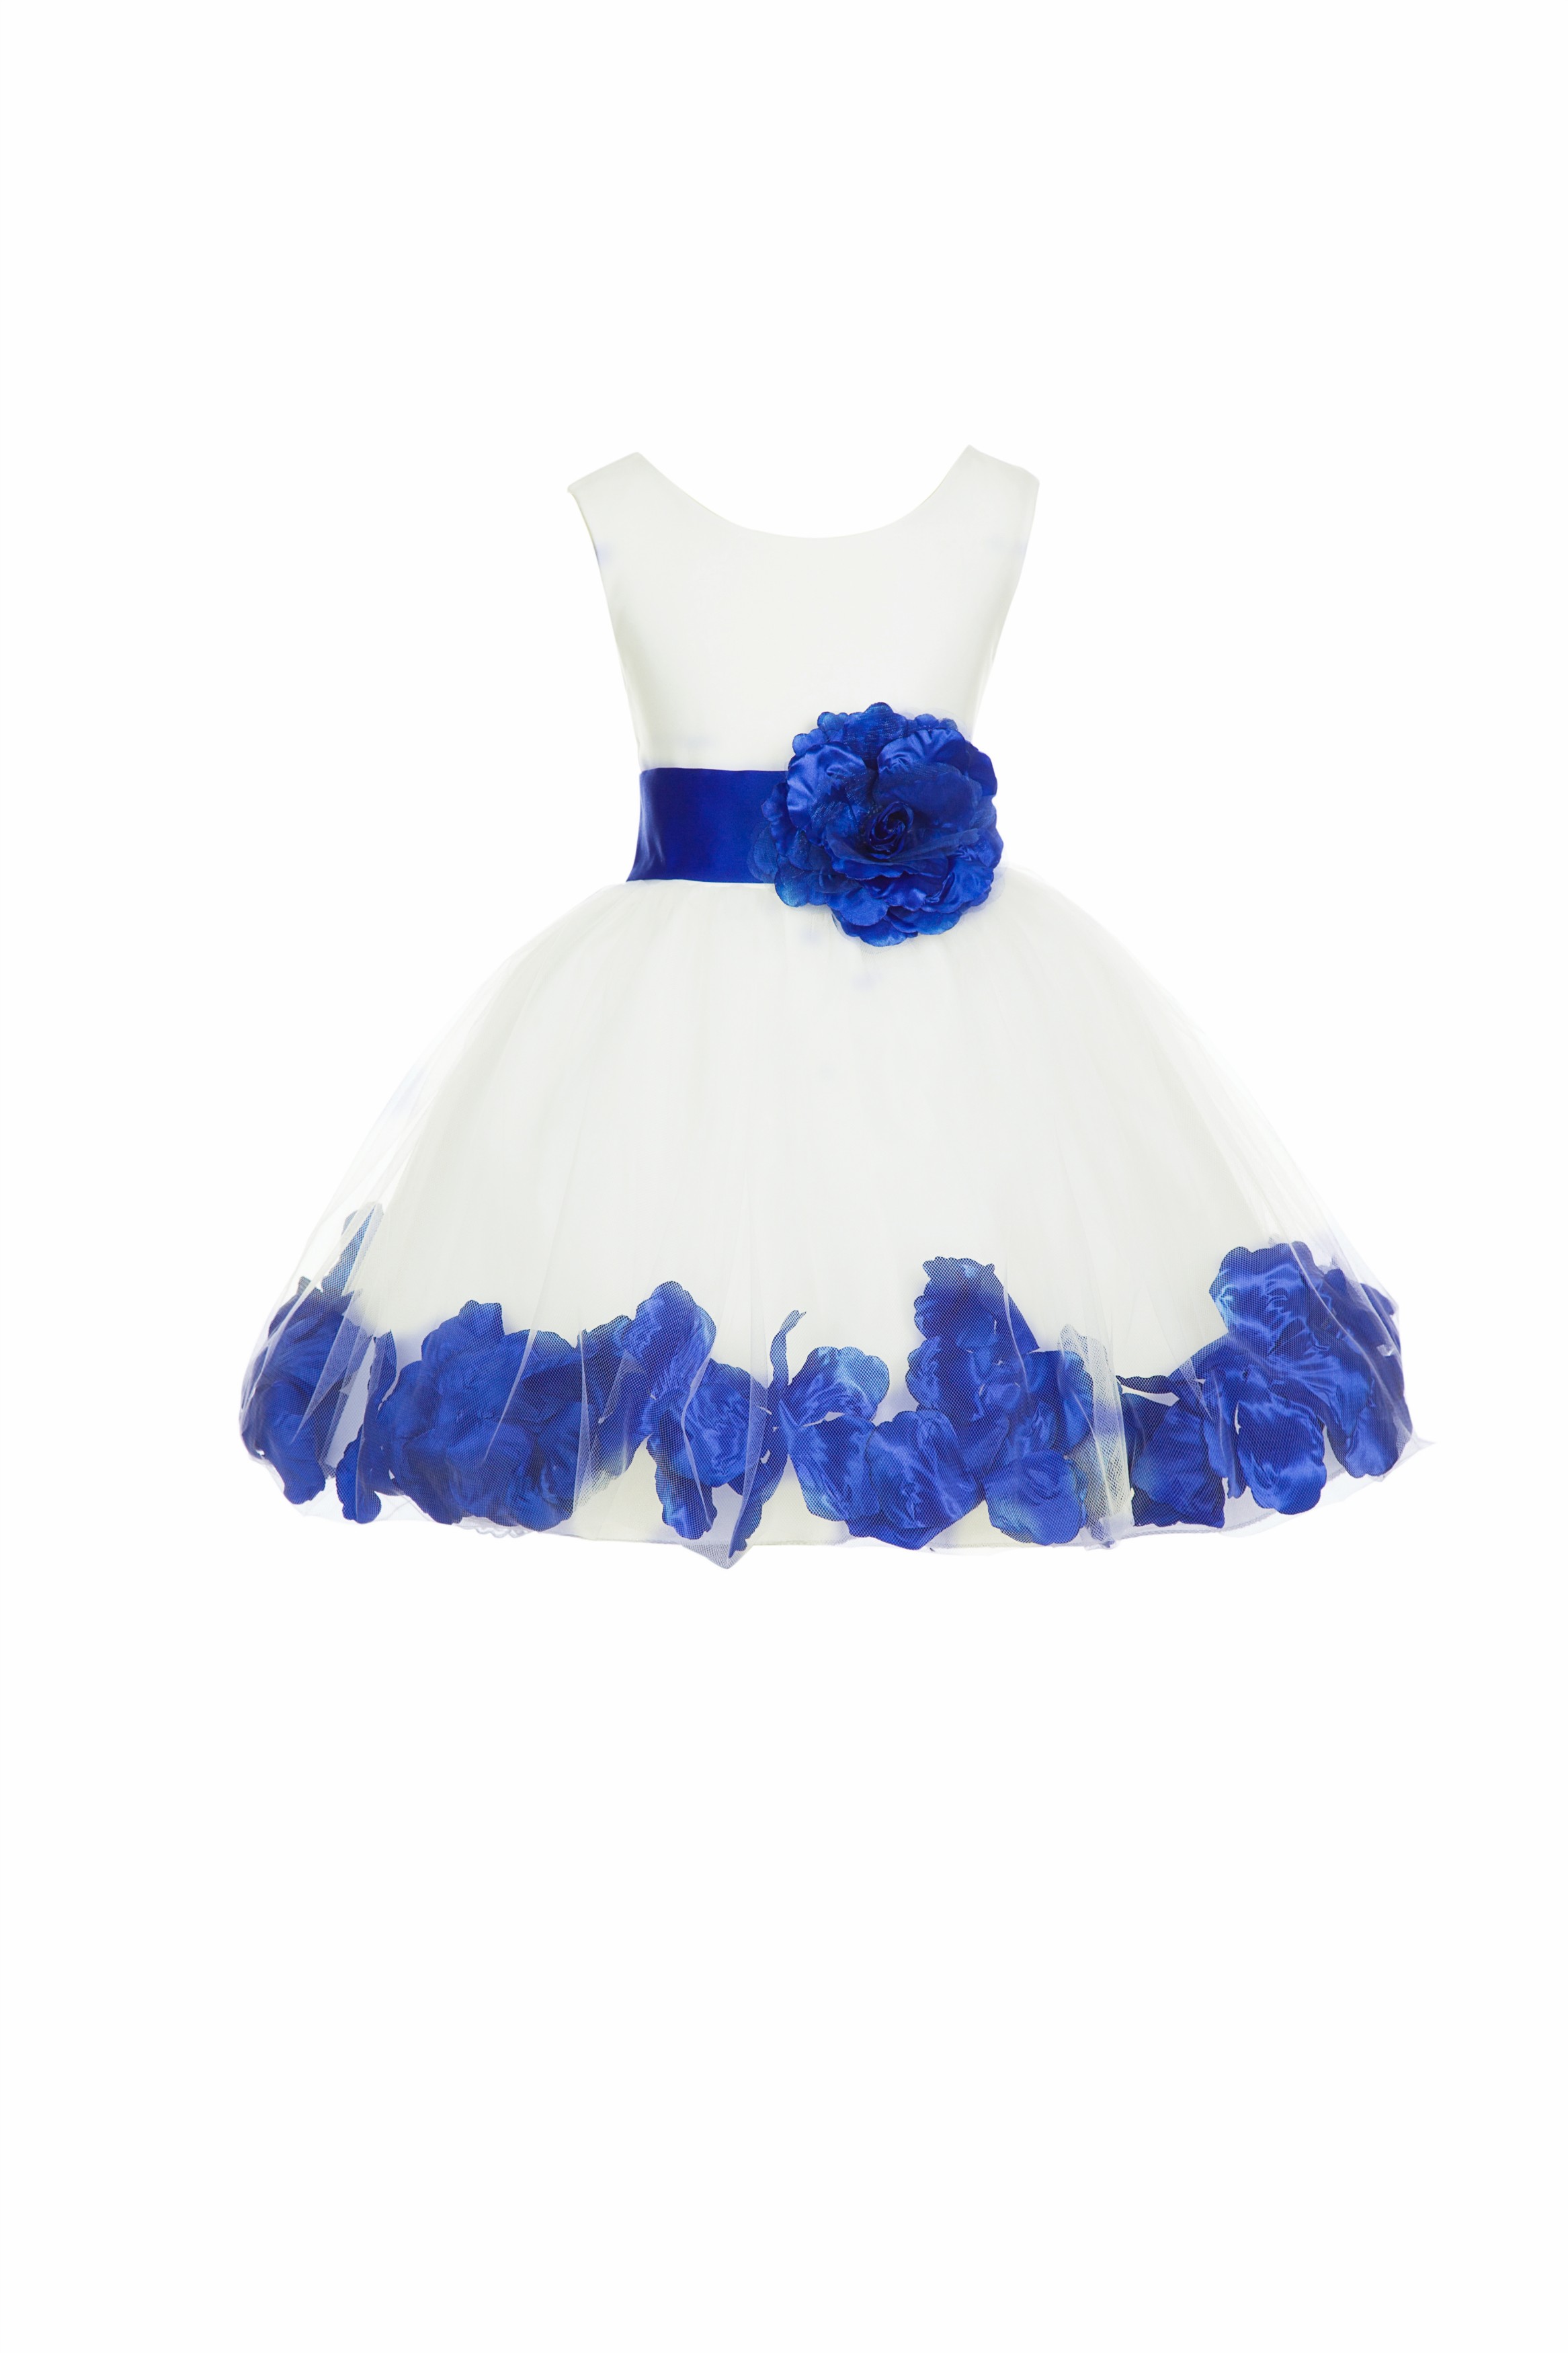 Ivory/Horizon Tulle Rose Petals Knee Length Flower Girl Dress 306S